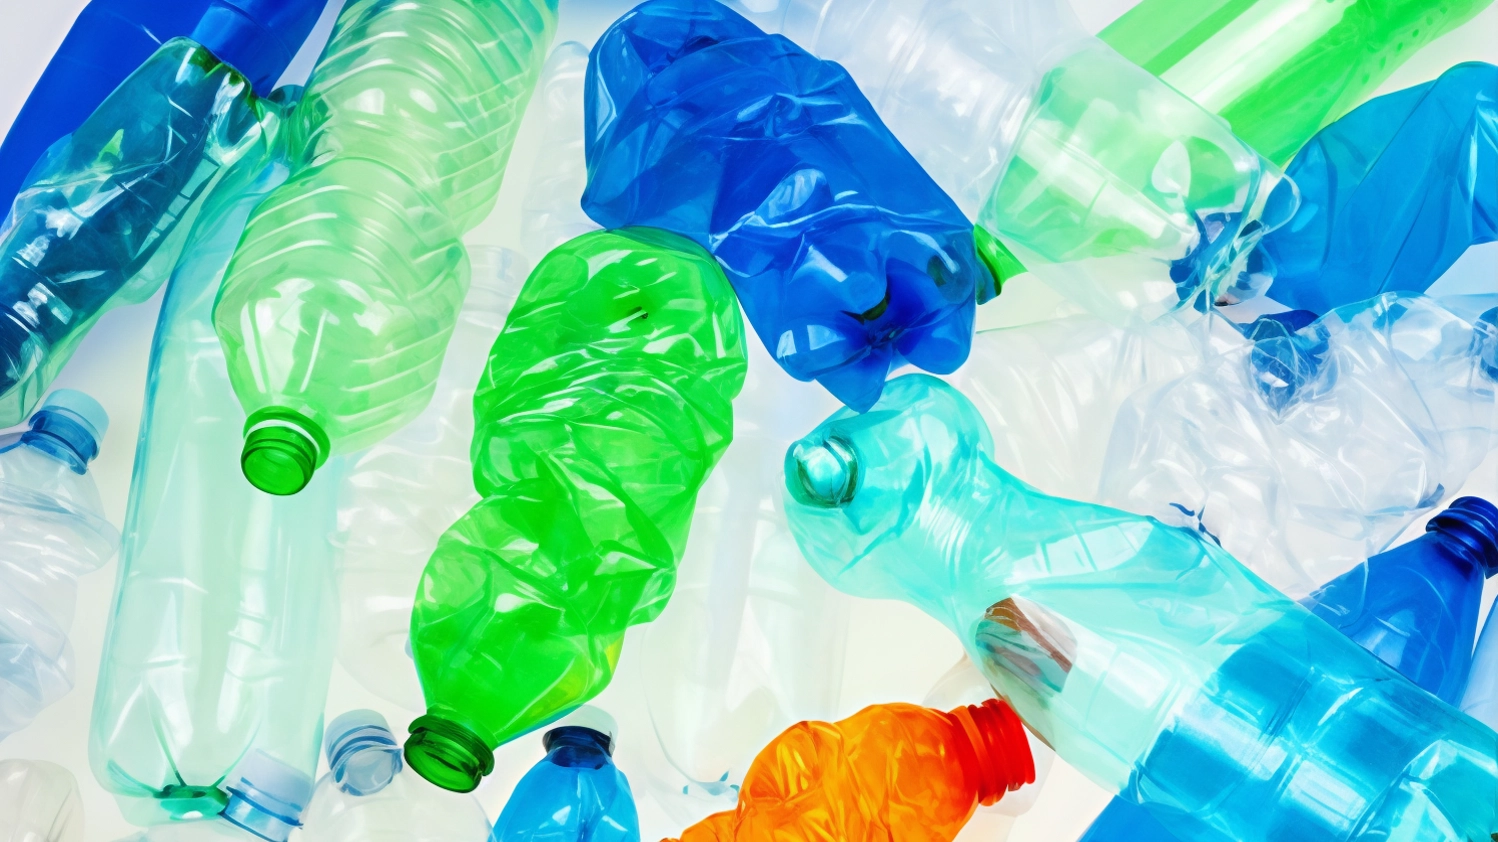 Itelyum acquisisce Plasta Rei per diventare un importante produttore di PET riciclato chimicamente, promuovendo l'economia circolare e l'innovazione nel settore plastico.